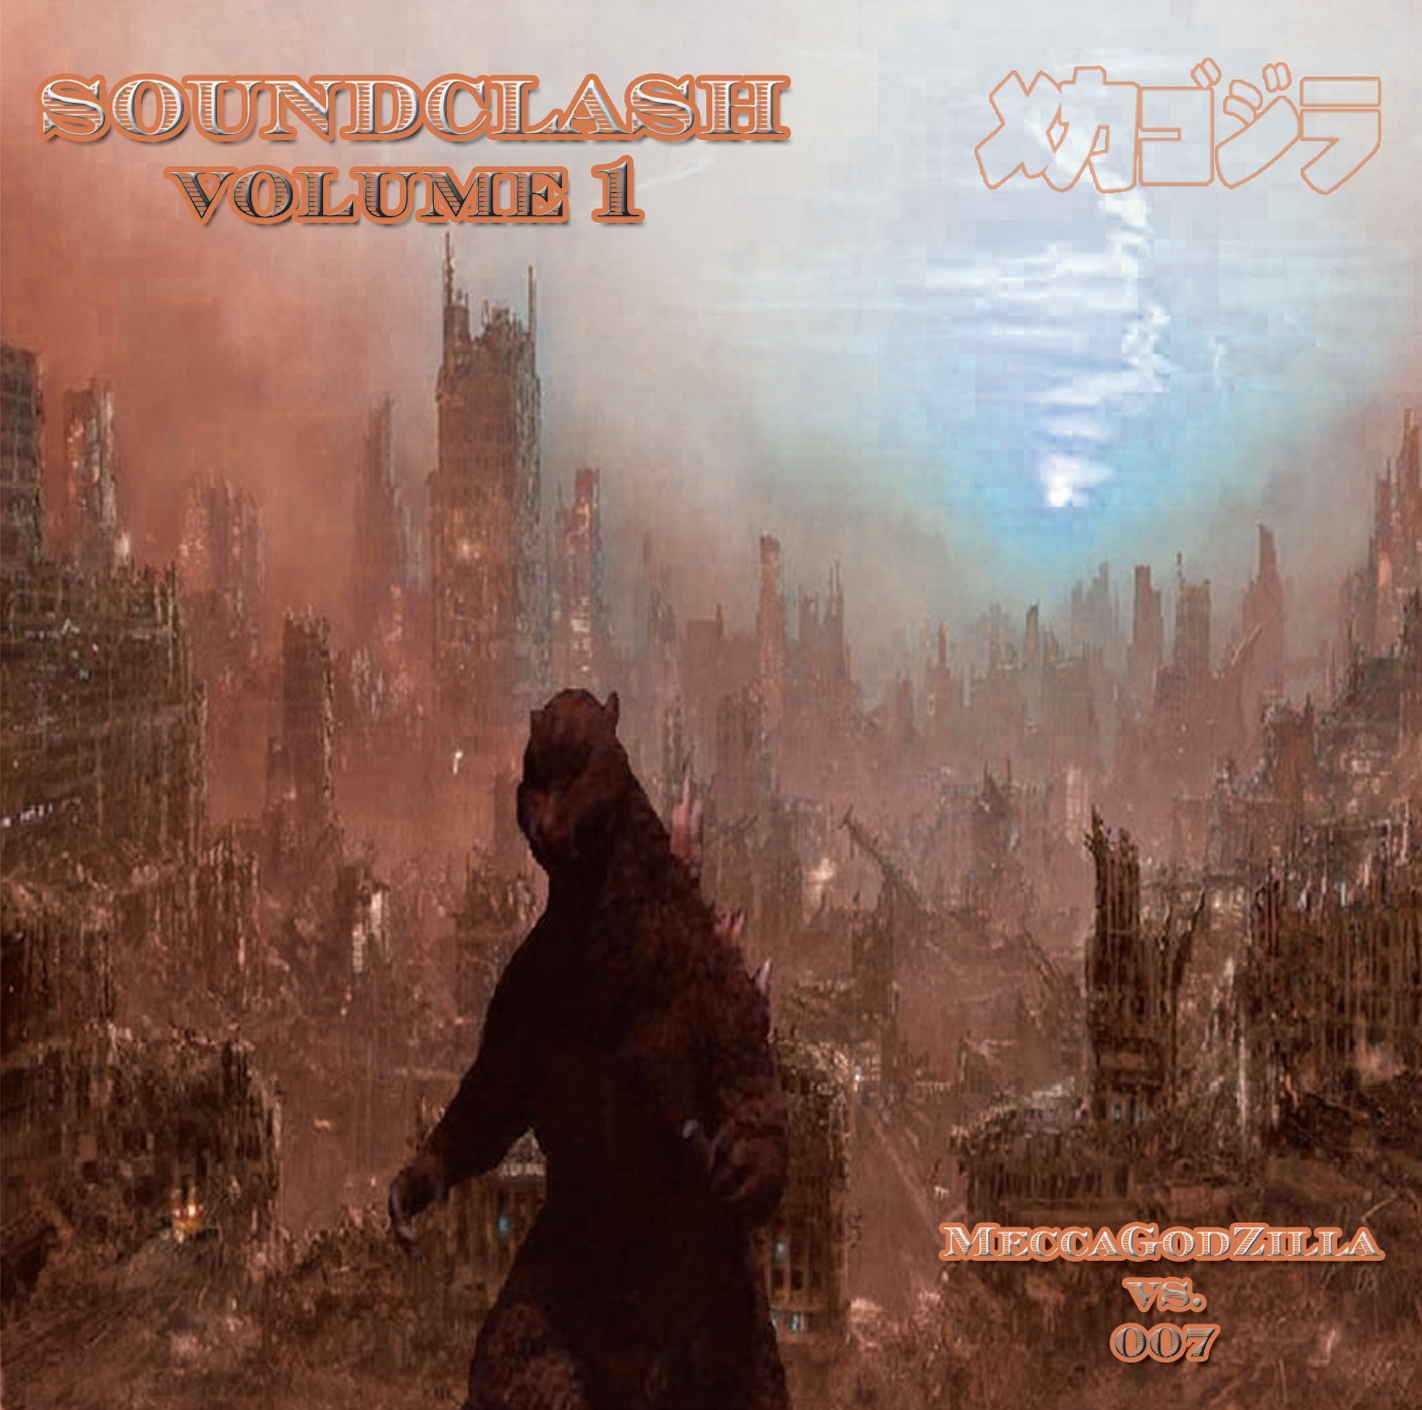 Soundclash Vol 1 - MeccaGodZilla vs 007 CD